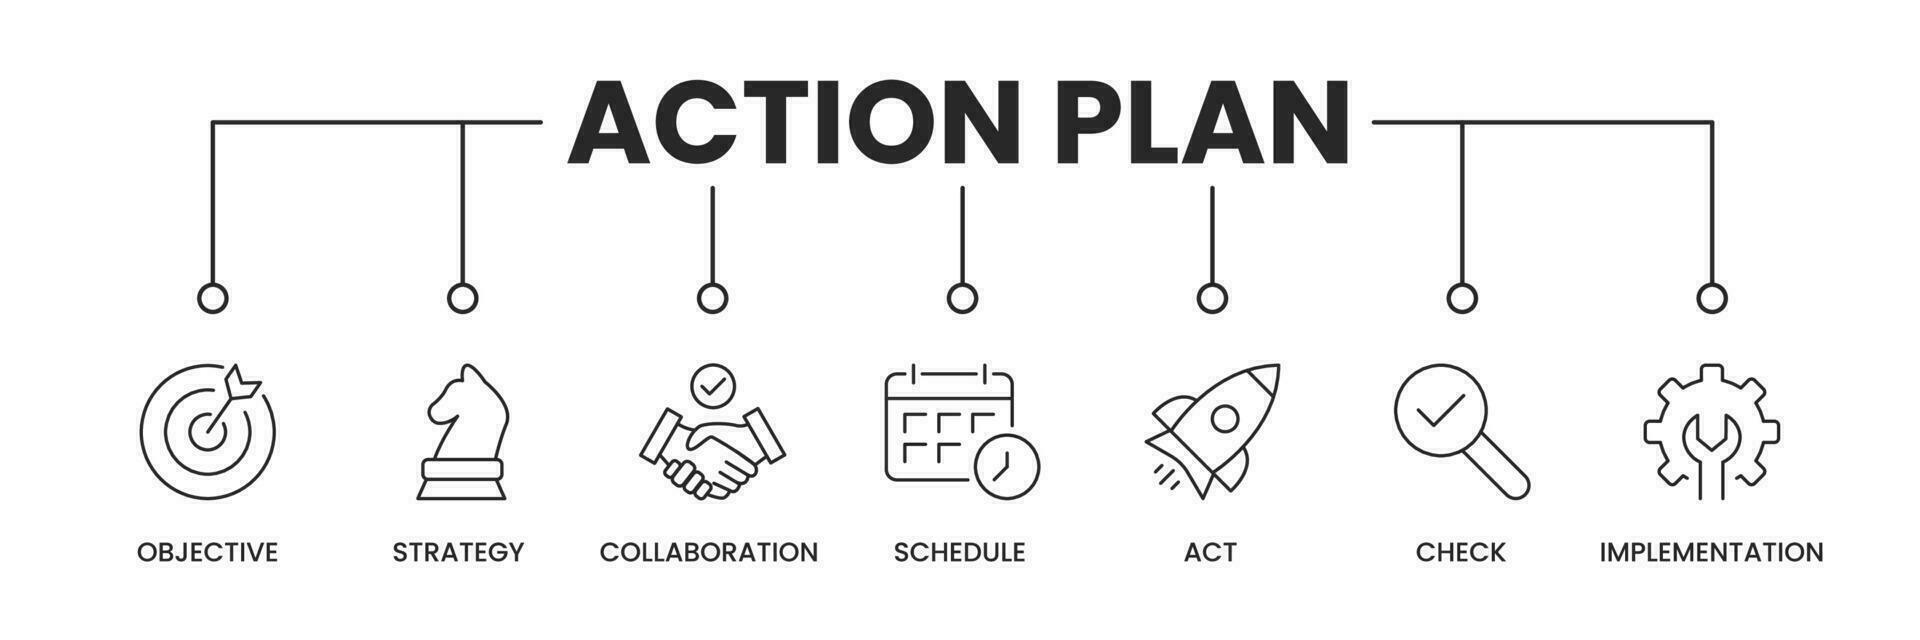 actie plan pictogrammen spandoek. actie plan banier met pictogrammen van doelstelling, strategie, samenwerking, schema, handelen, controleren, en implementatie. vector illustratie.